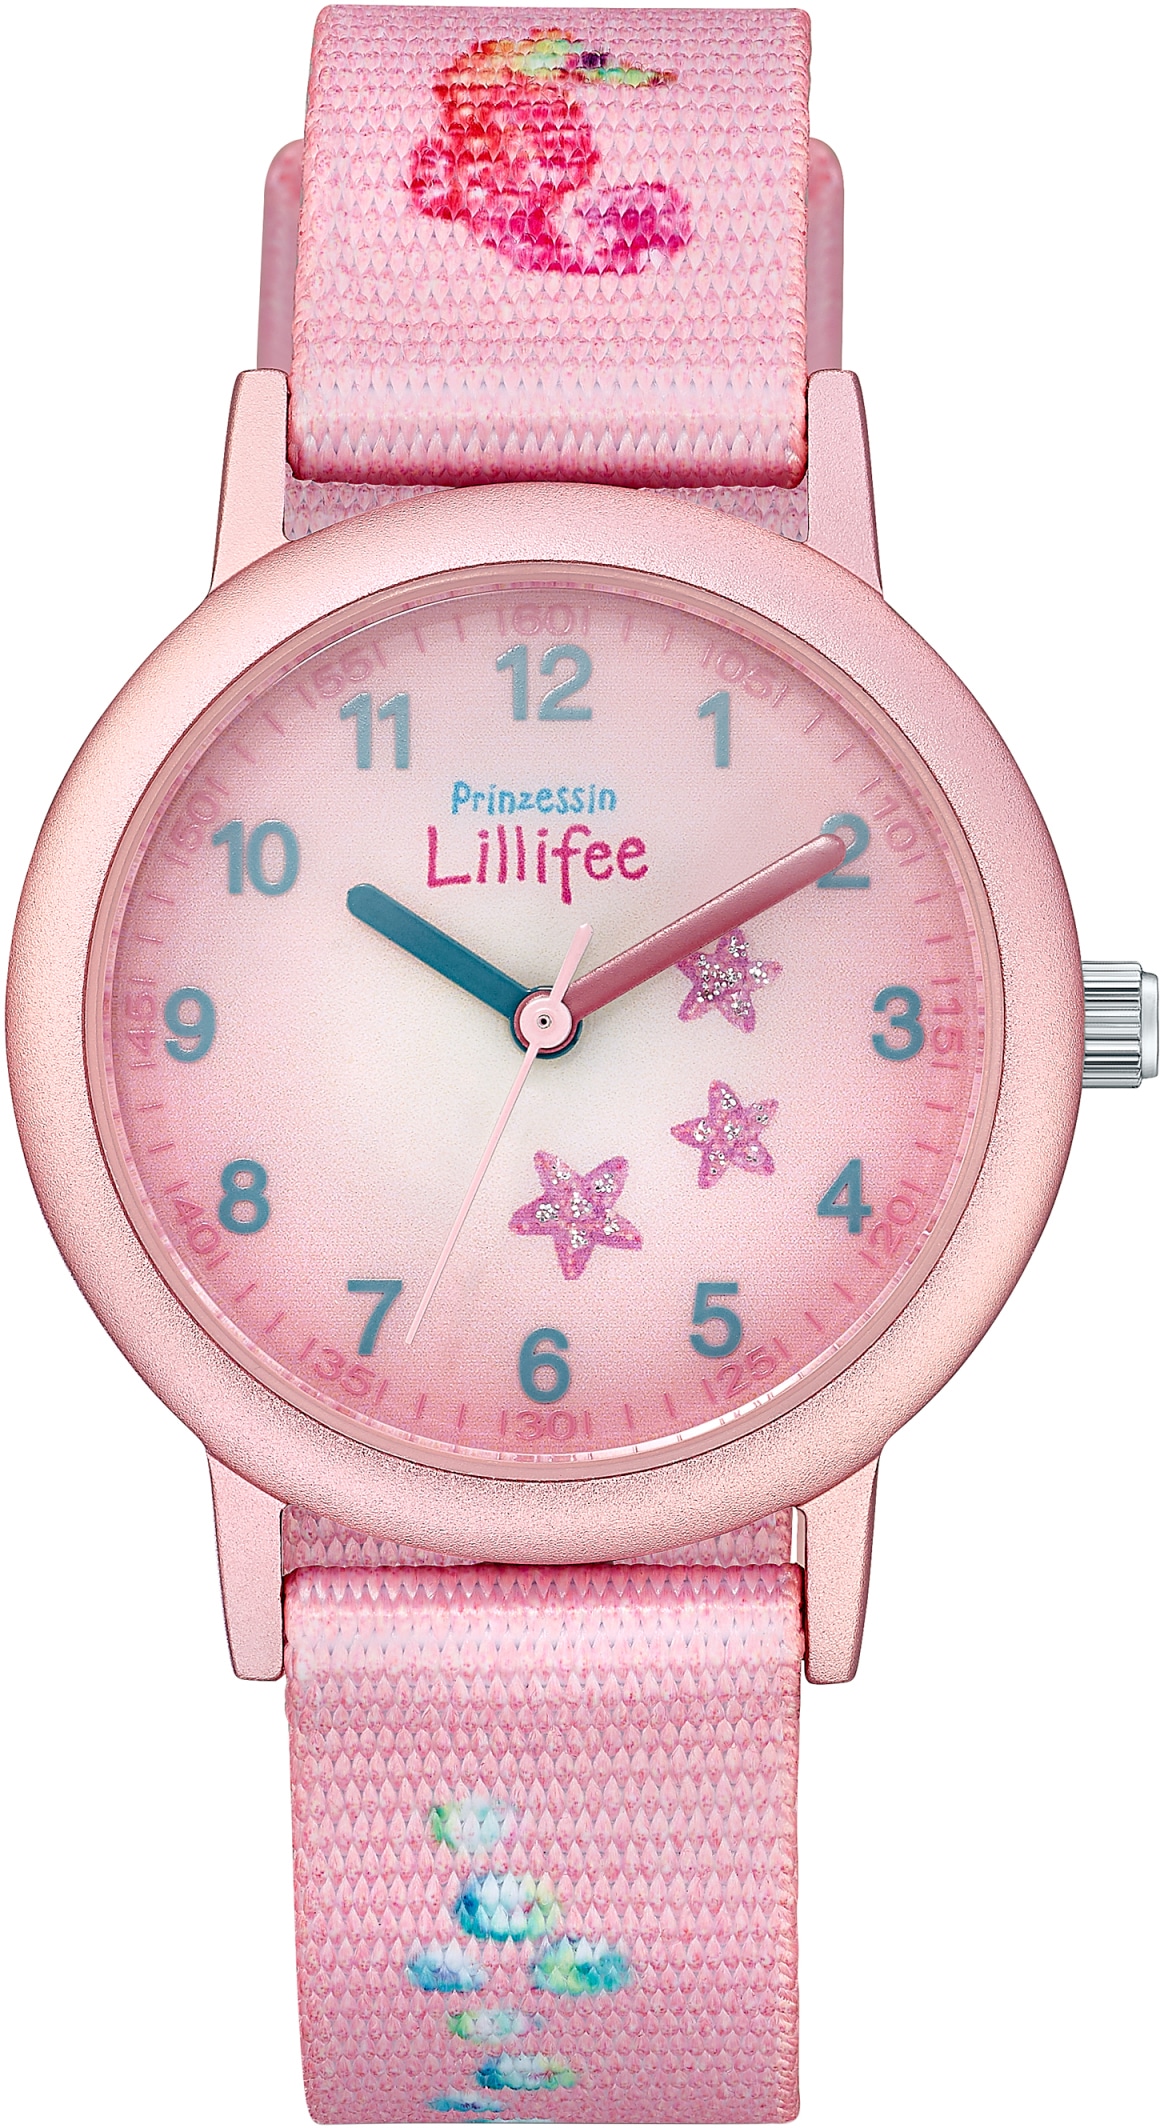 Prinzessin Lillifee Quarzuhr »2031753«, Armbanduhr, Kinderuhr, Mädchenuhr, ideal auch als Geschenk